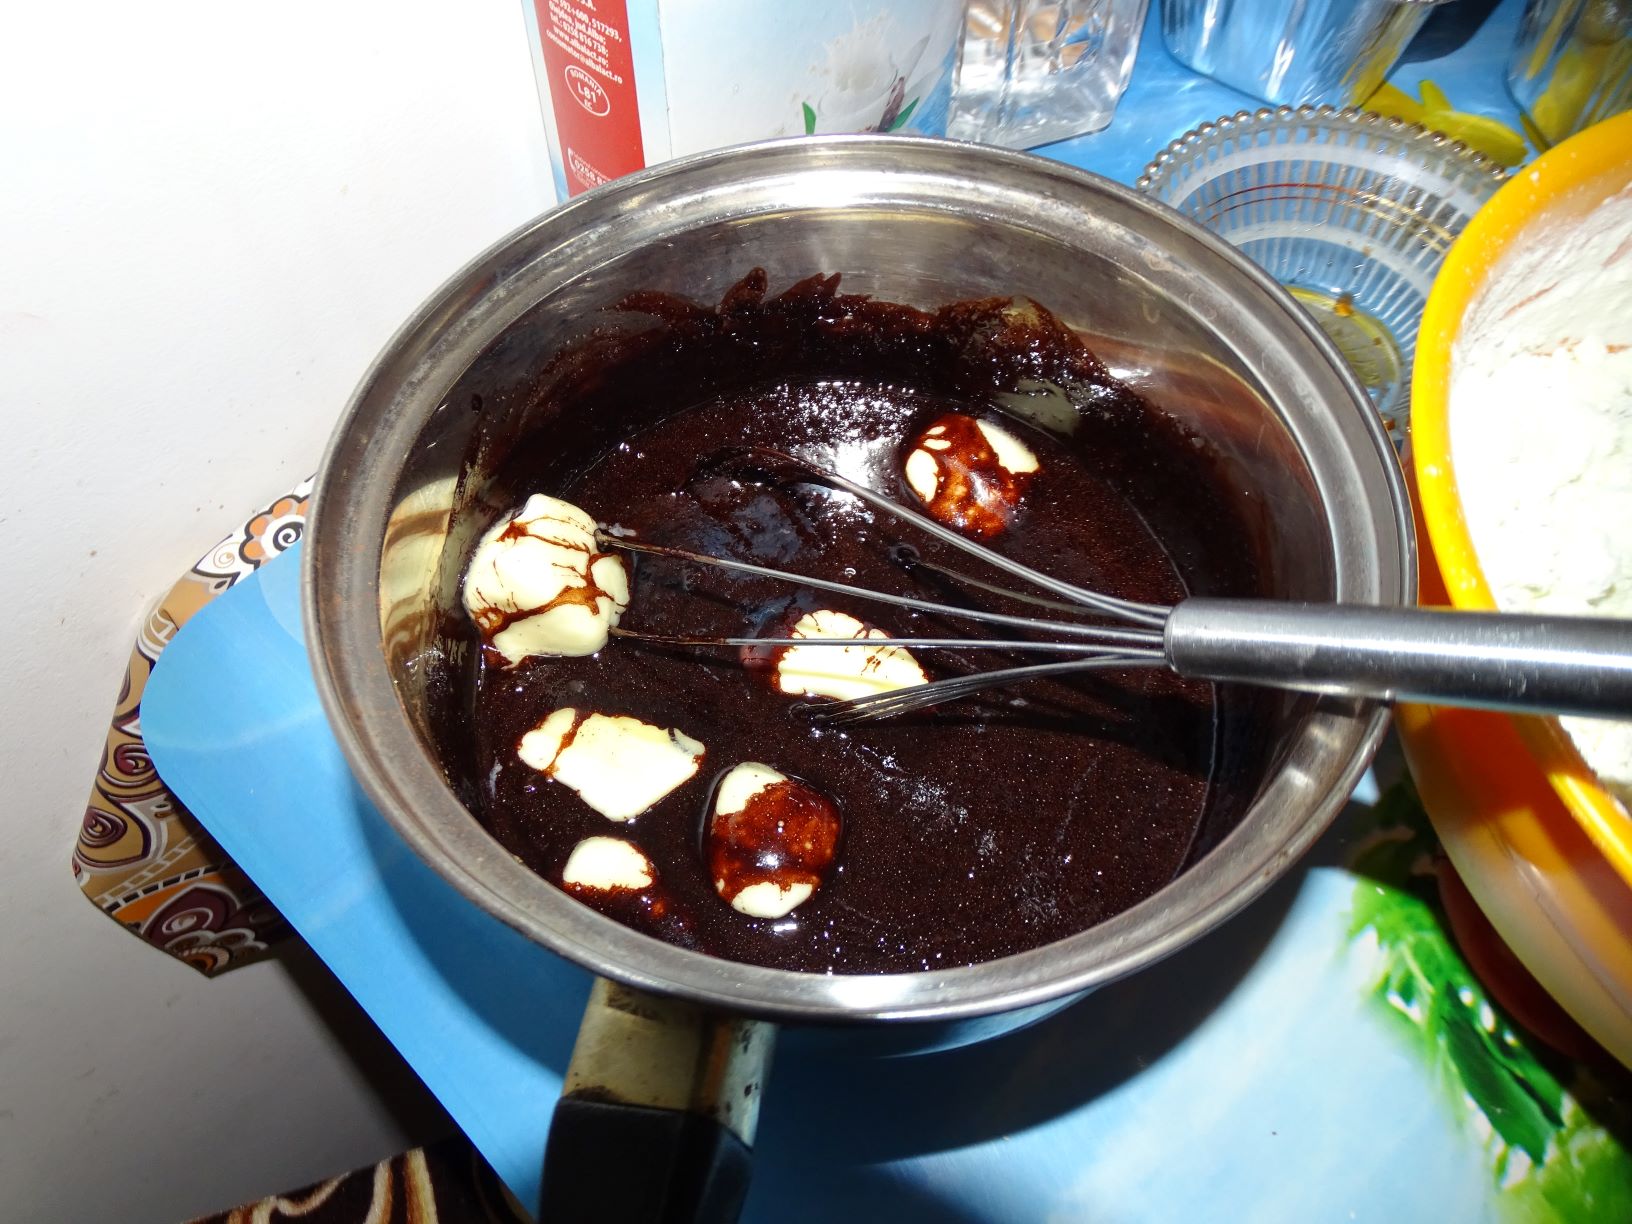 Desert ciocolata de casa cu cirese amare alcoolice si nuci pecan